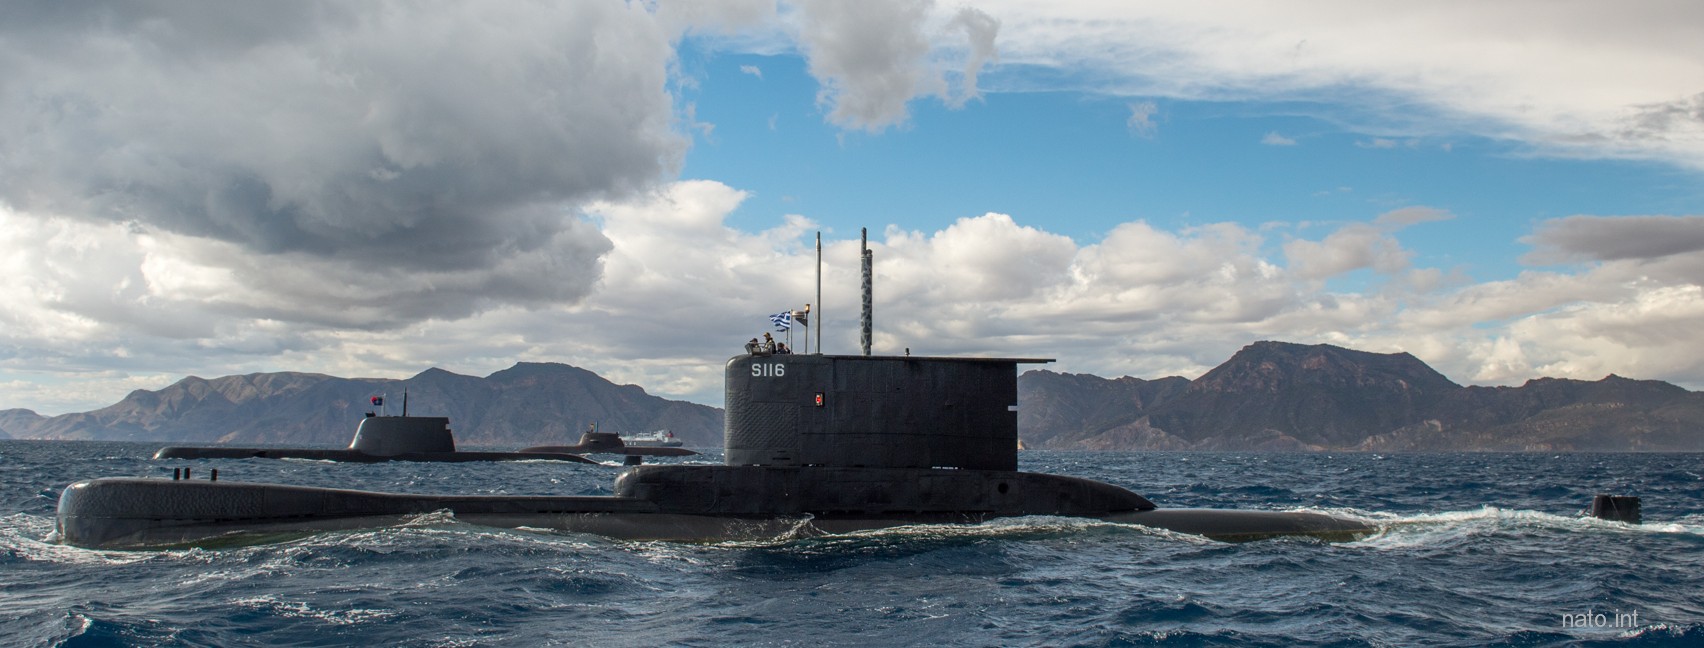 s-116 hs poseidon type 209-1200 class submarine hellenic navy 02